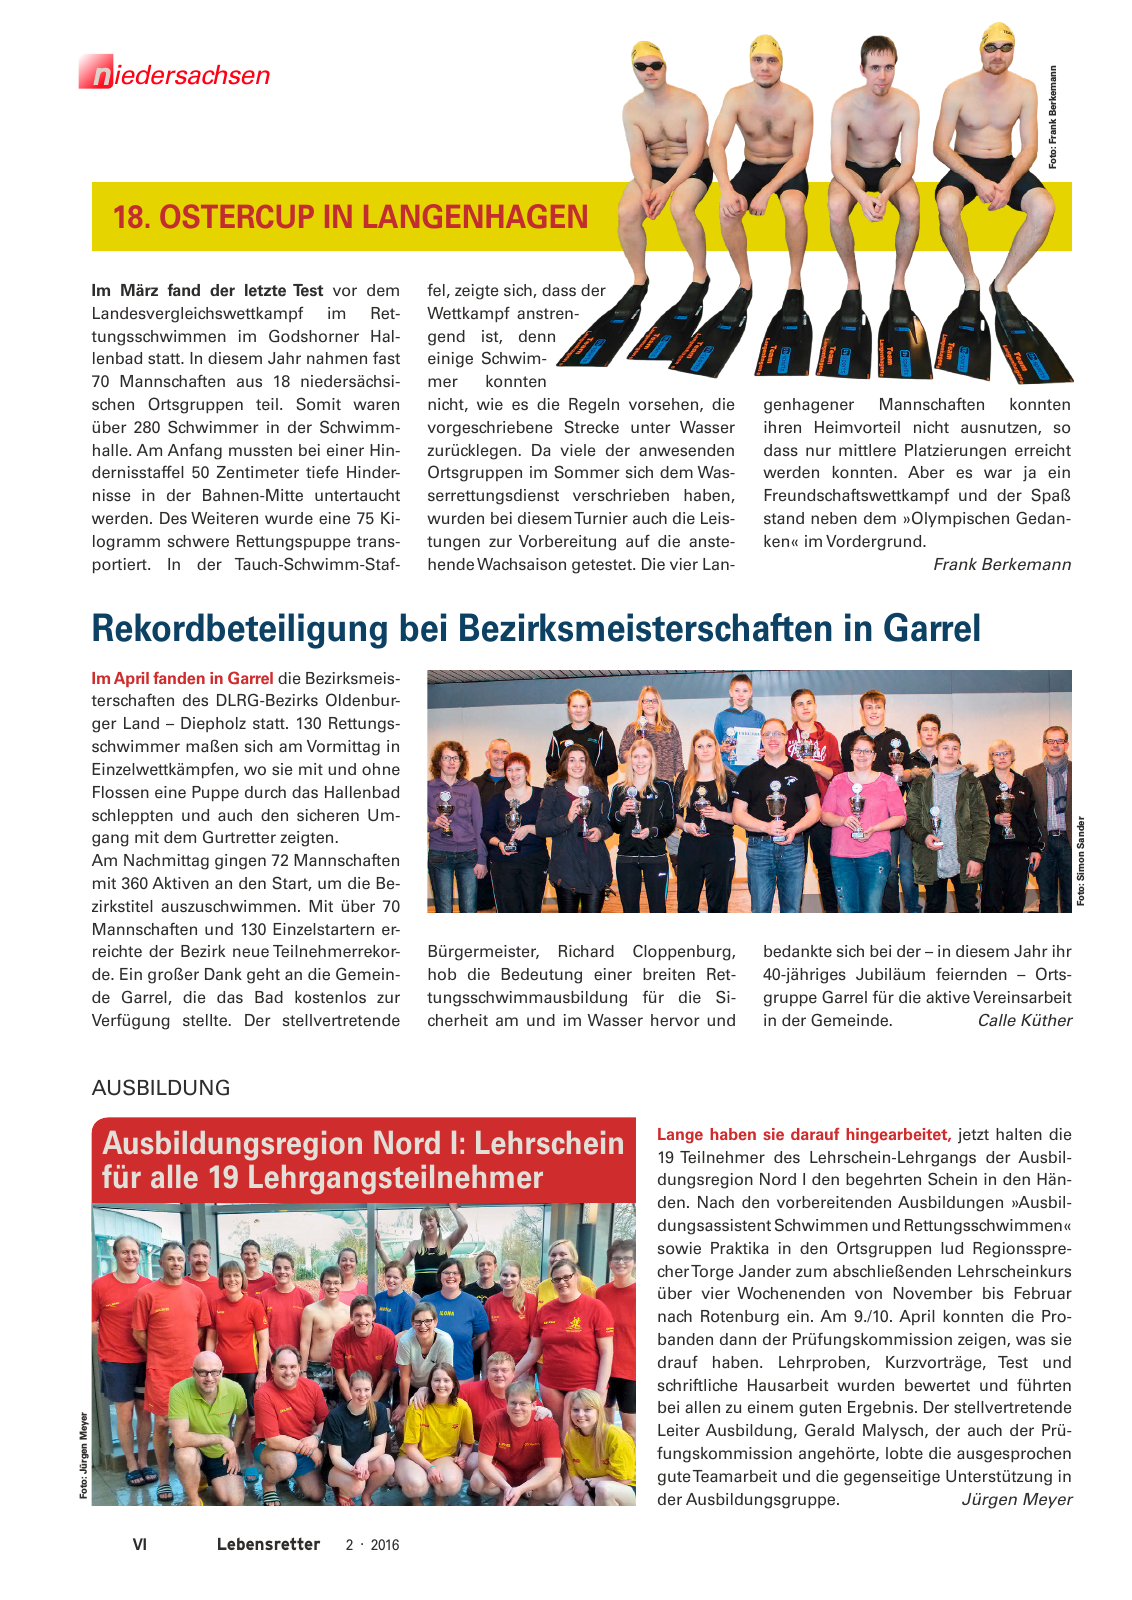 Vorschau Lebensretter 2/2016 - Regionalausgabe Niedersachsen Seite 8